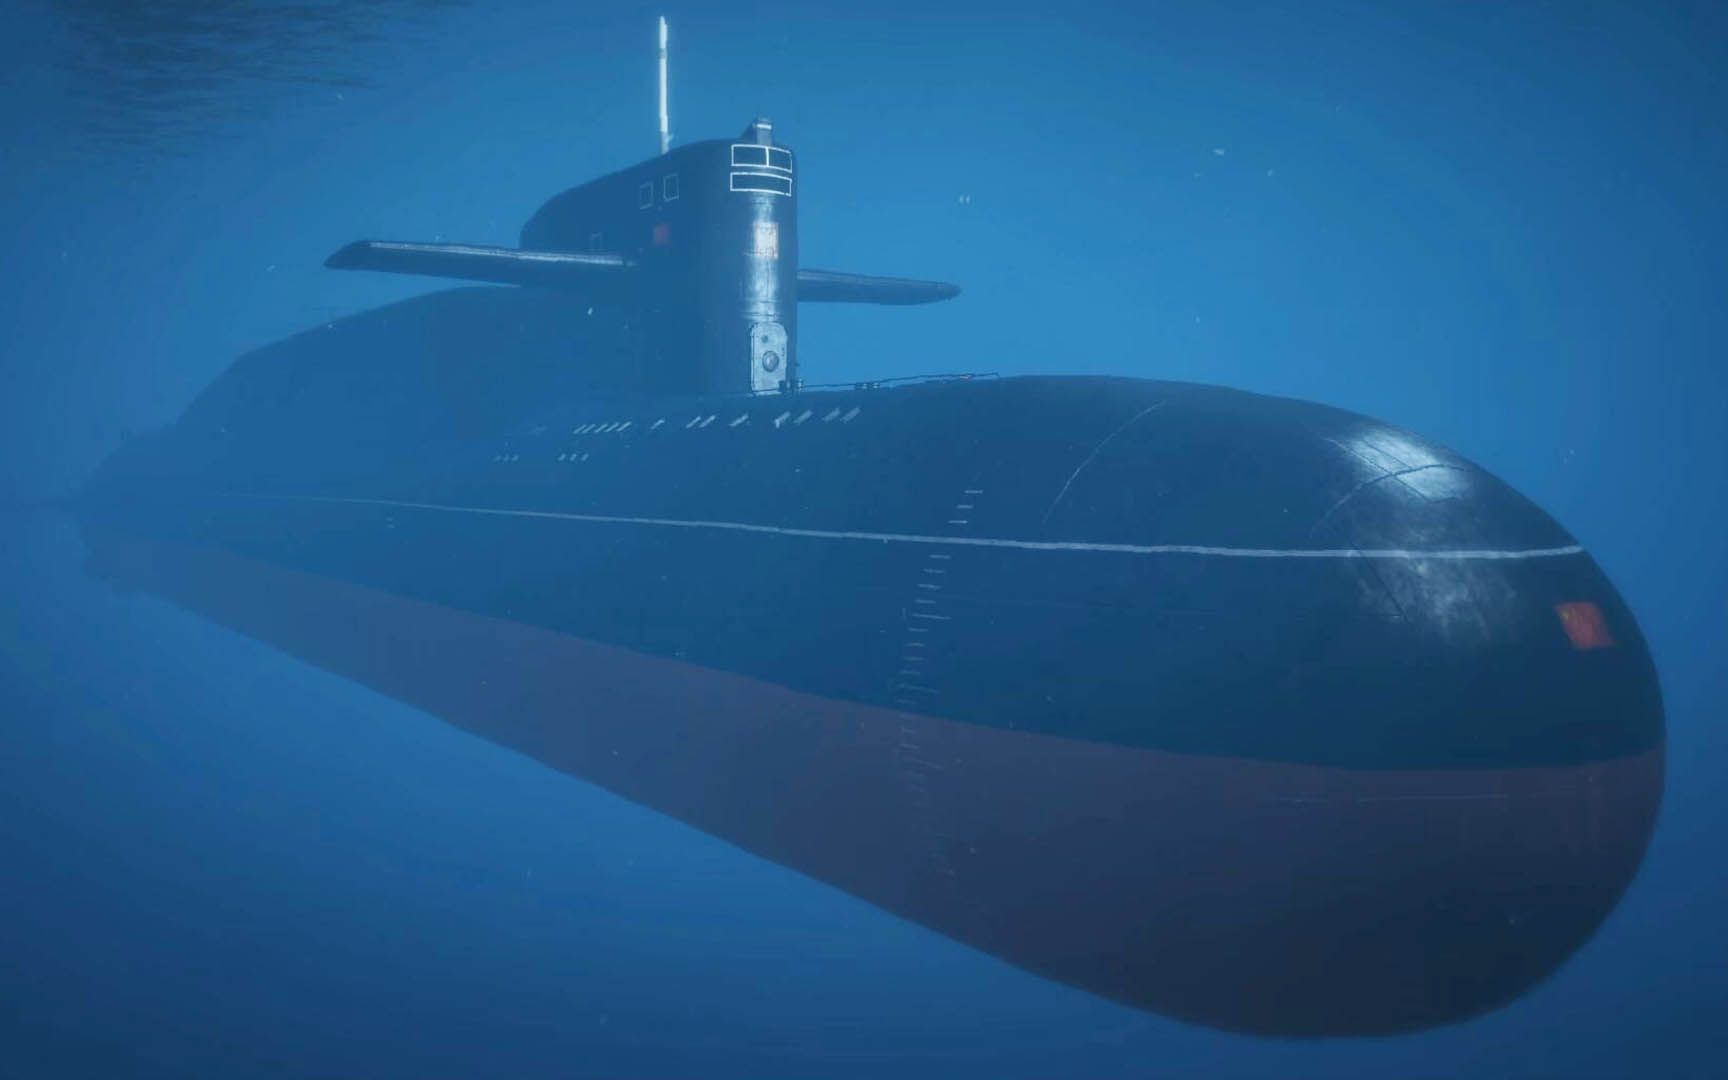 【gta5】佩里科岛dlc初体验1 核潜艇不仅可以开 还可以发射遥控导弹